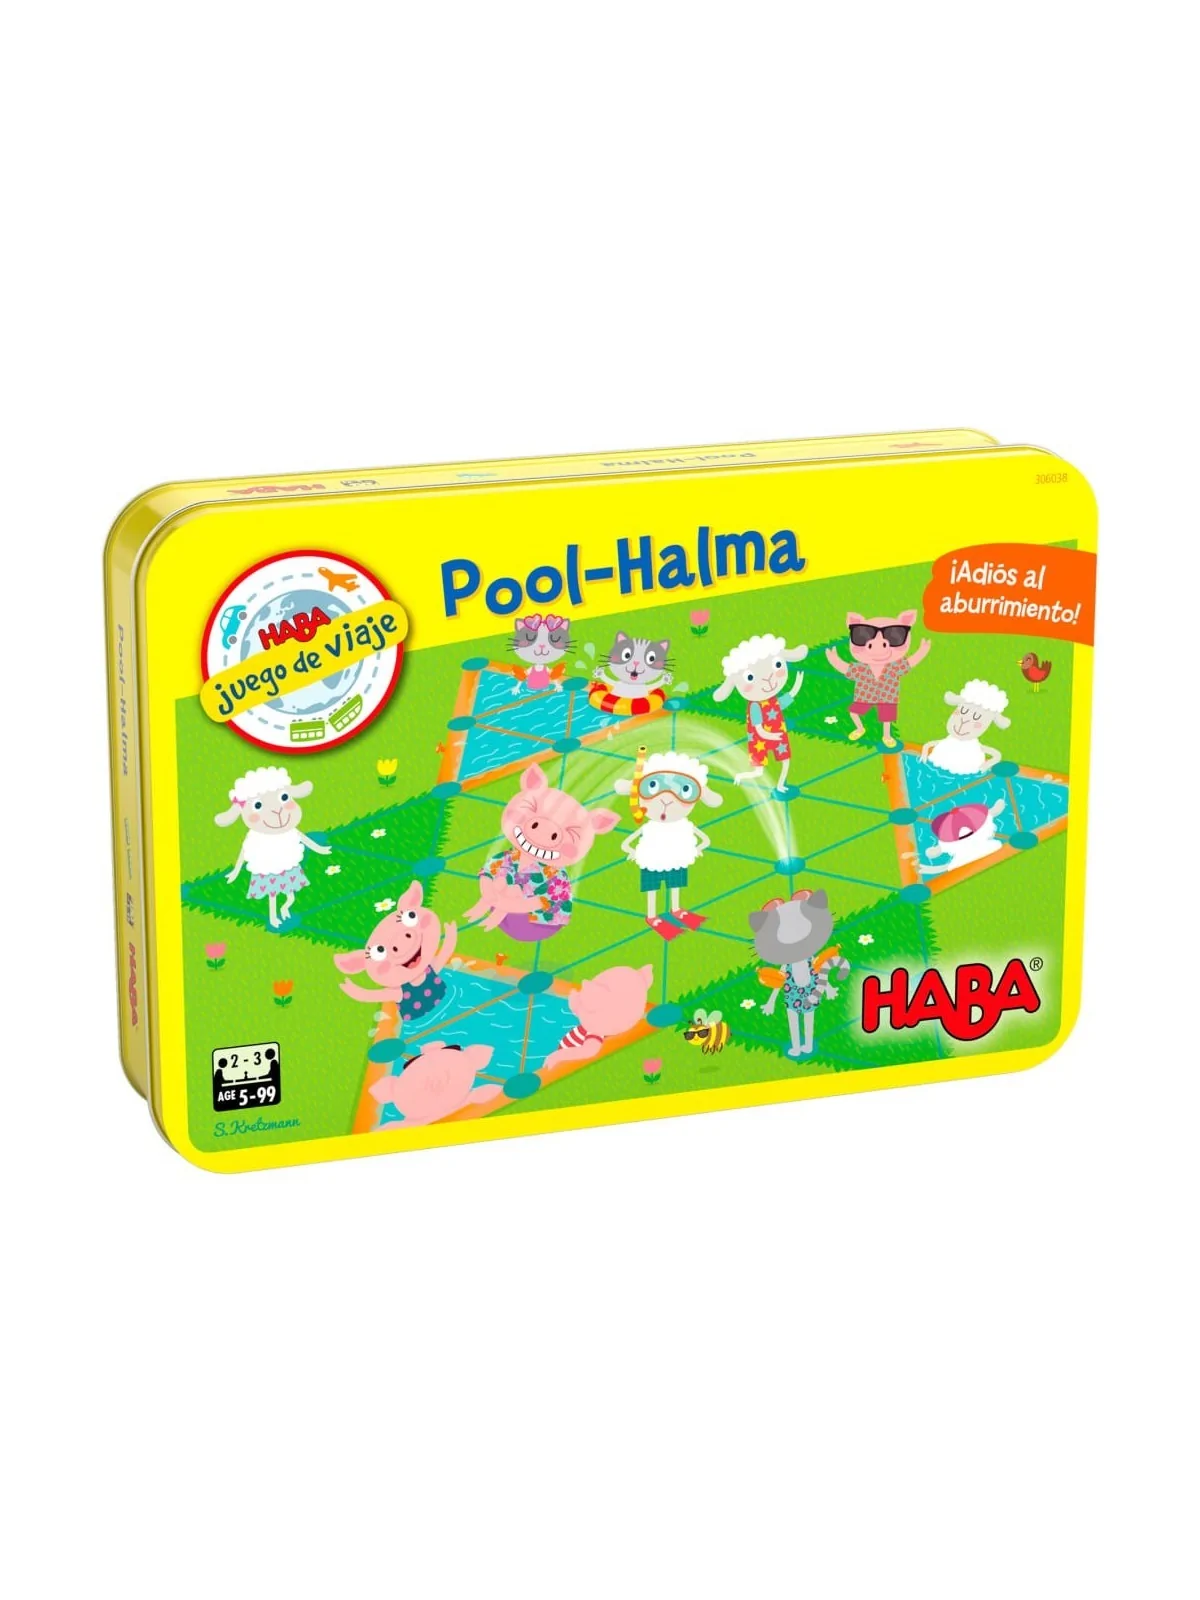 Comprar Pool-Halma barato al mejor precio 12,59 € de Haba